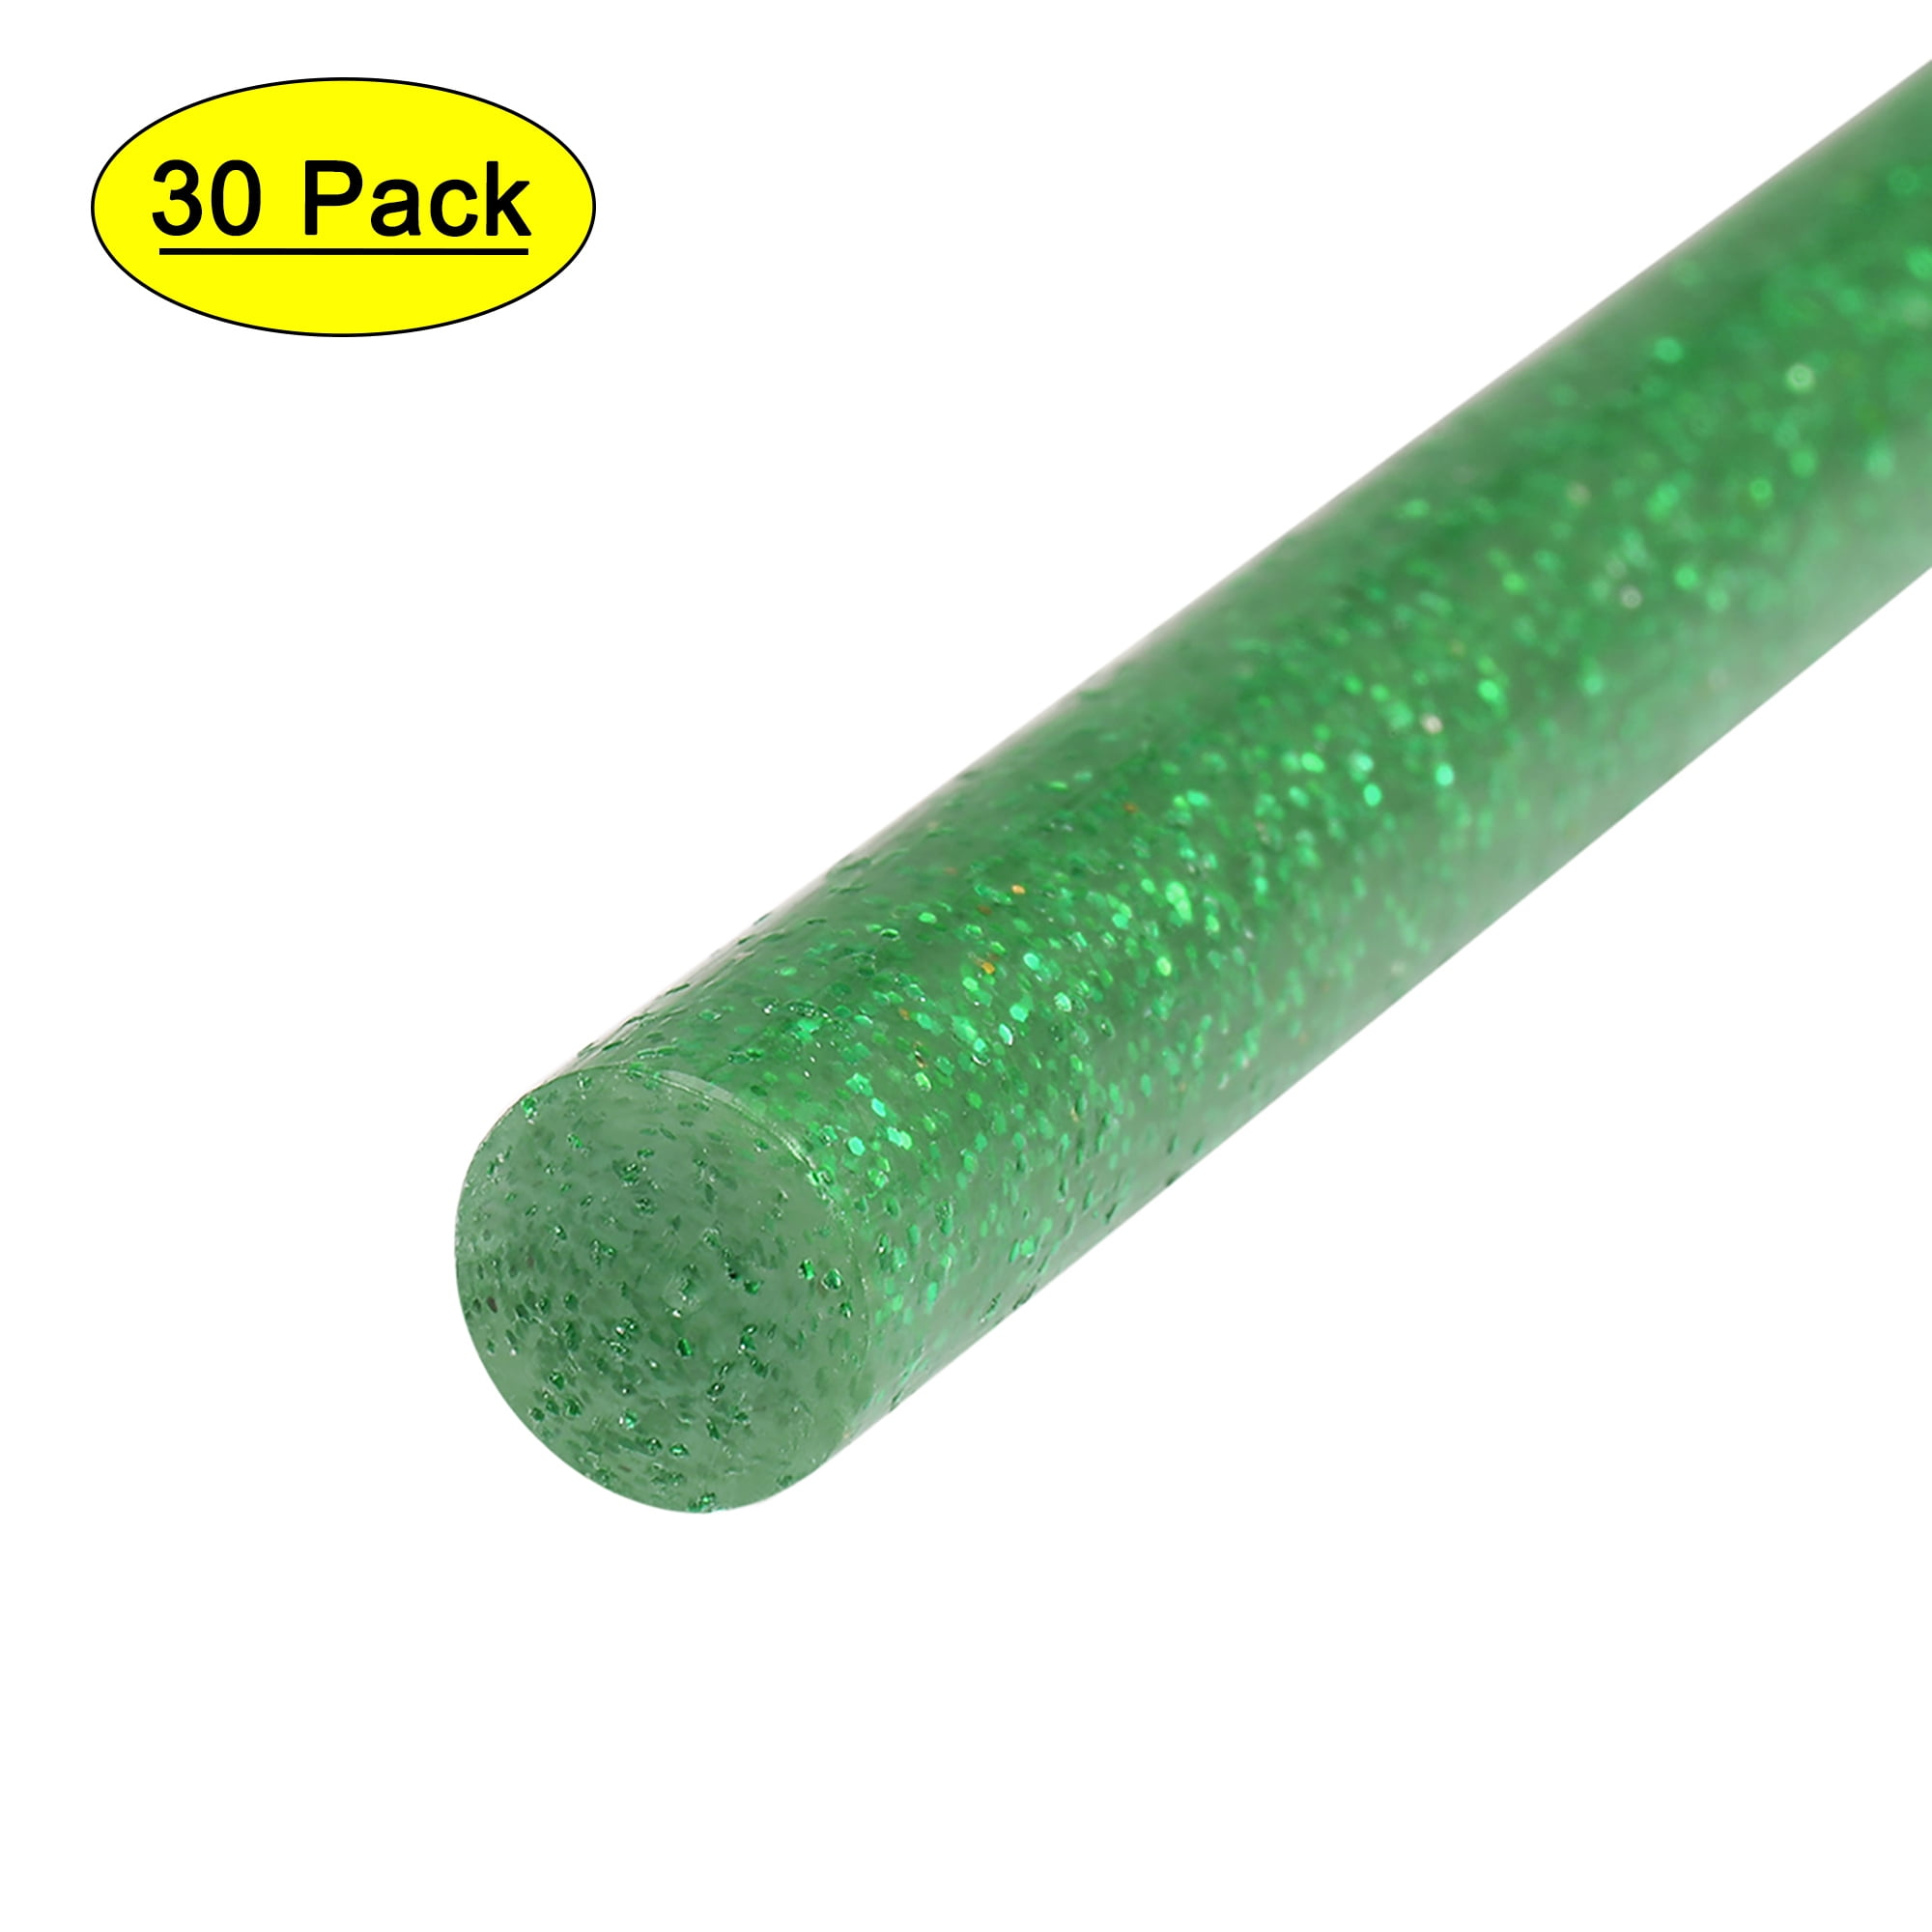 Mr. Pen- Glitter Hot Glue Sticks, 4x0.27, 48 pcs, Colored Hot Glue Gun  Sticks, Mini Glue Sticks for Hot Glue Gun, Mini Hot Glue Sticks, Colored  Glue Sticks, Small Glue Sticks, Hot